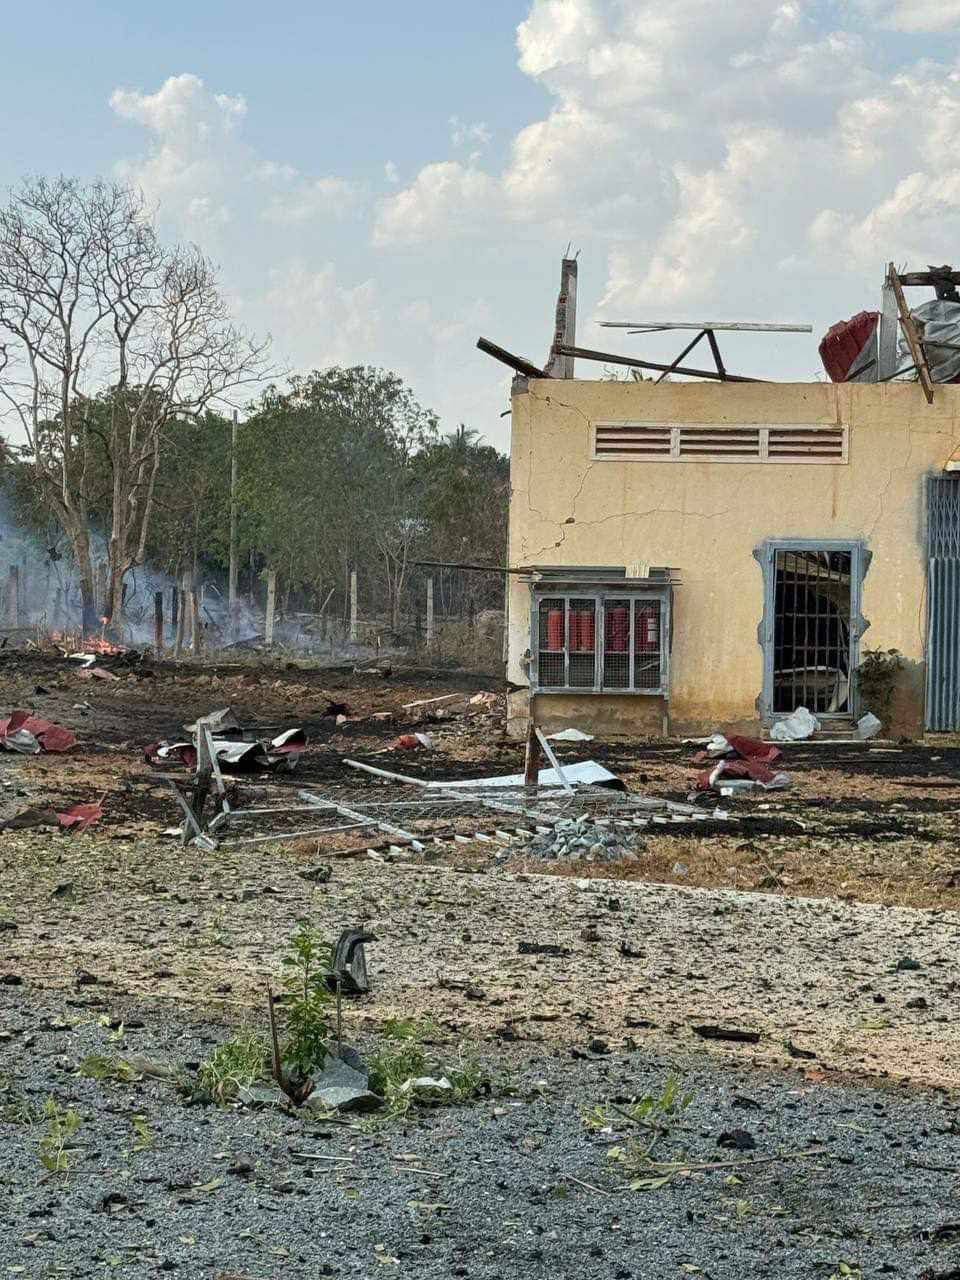 Campuchia: Nổ kho đạn, 20 binh sĩ thiệt mạng và nhiều ngôi nhà bị hư hại